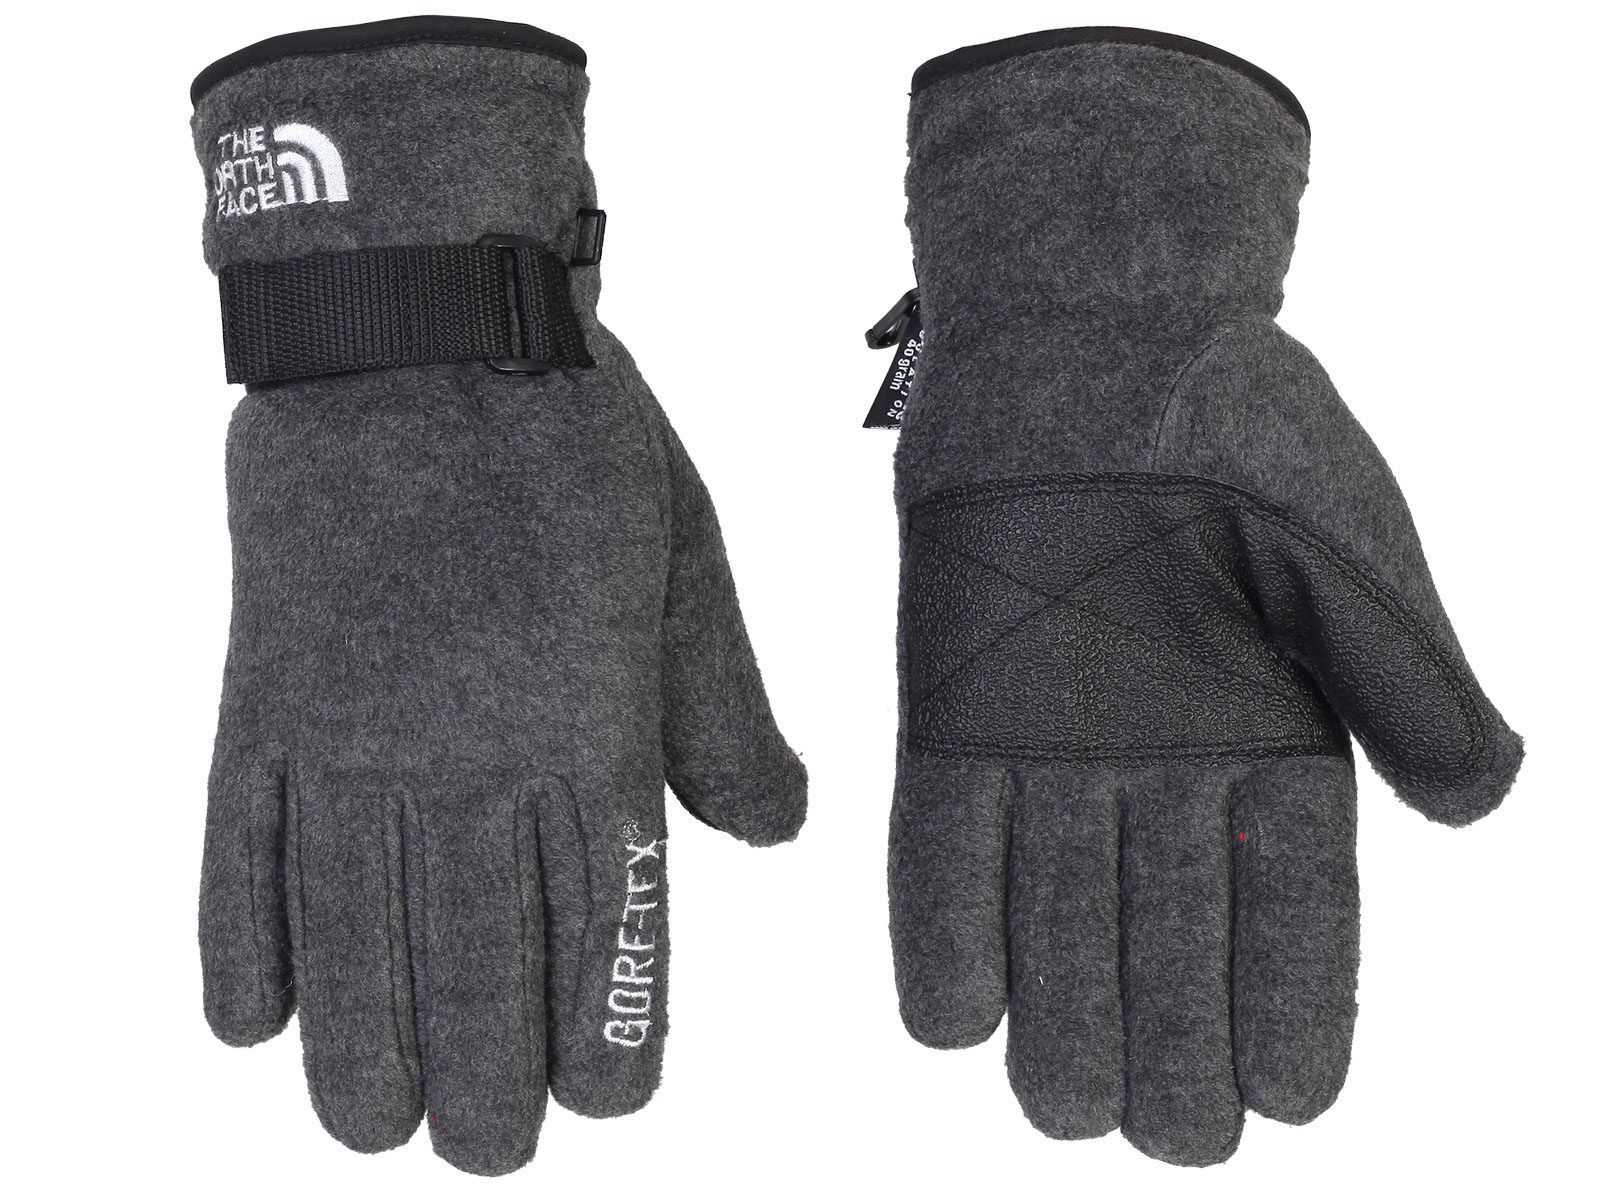 Зимние перчатки The North Face – теплые, мягкие, естественное положение кисти №85